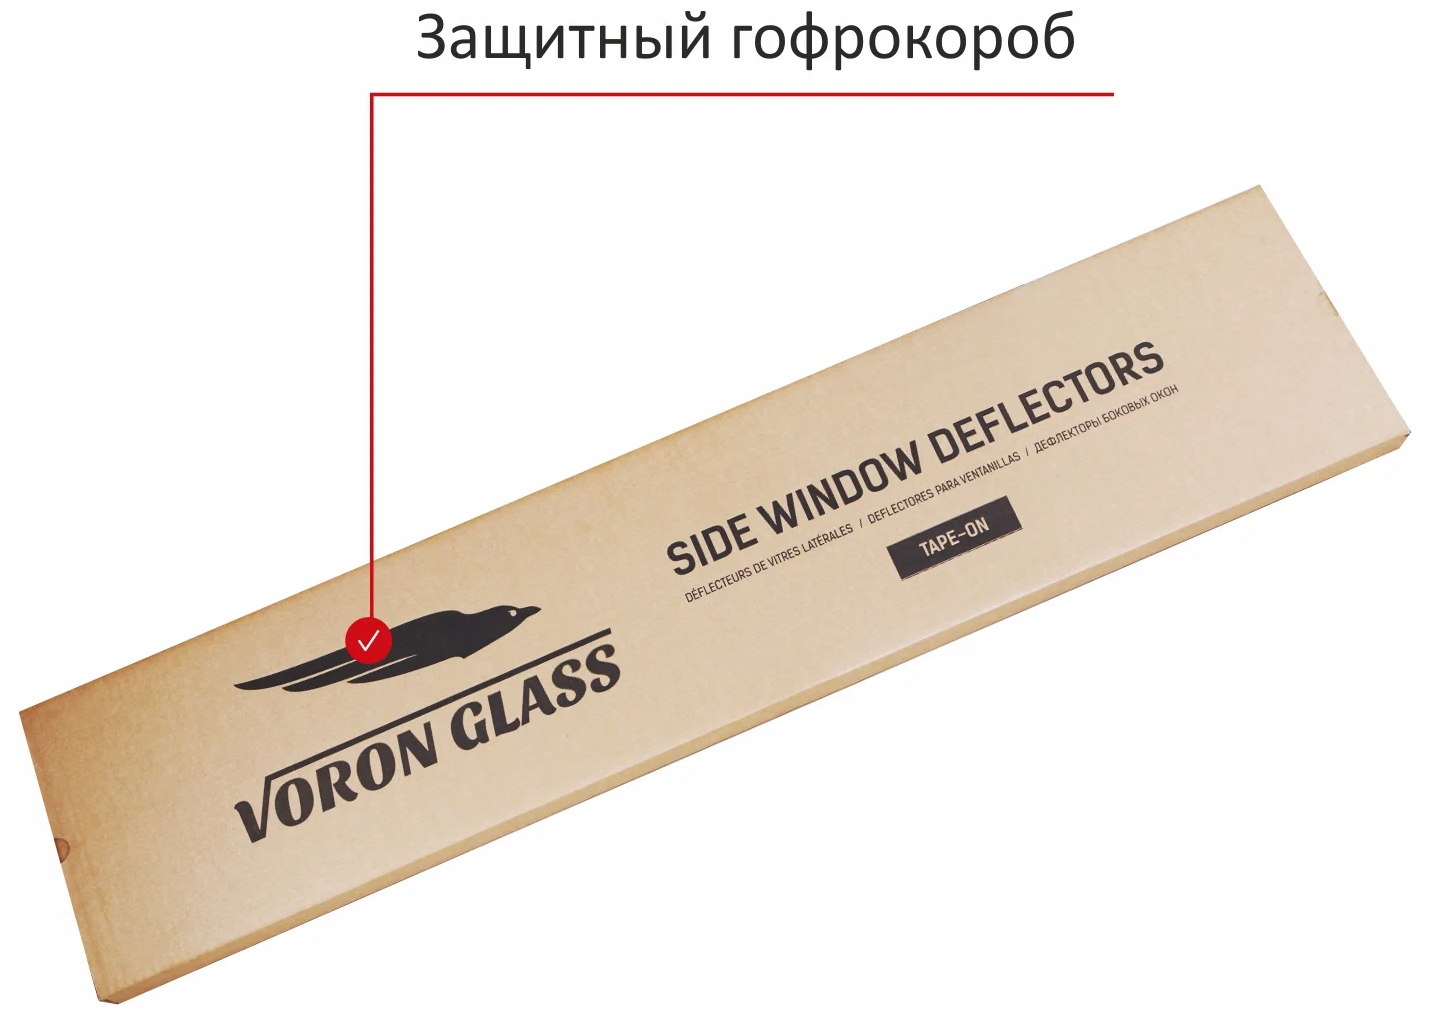 Дефлекторы окон неломающиеся Voron Glass серия Samurai для Skoda Rapid 2014-2020 седан накладные 4 шт. - фотография № 10